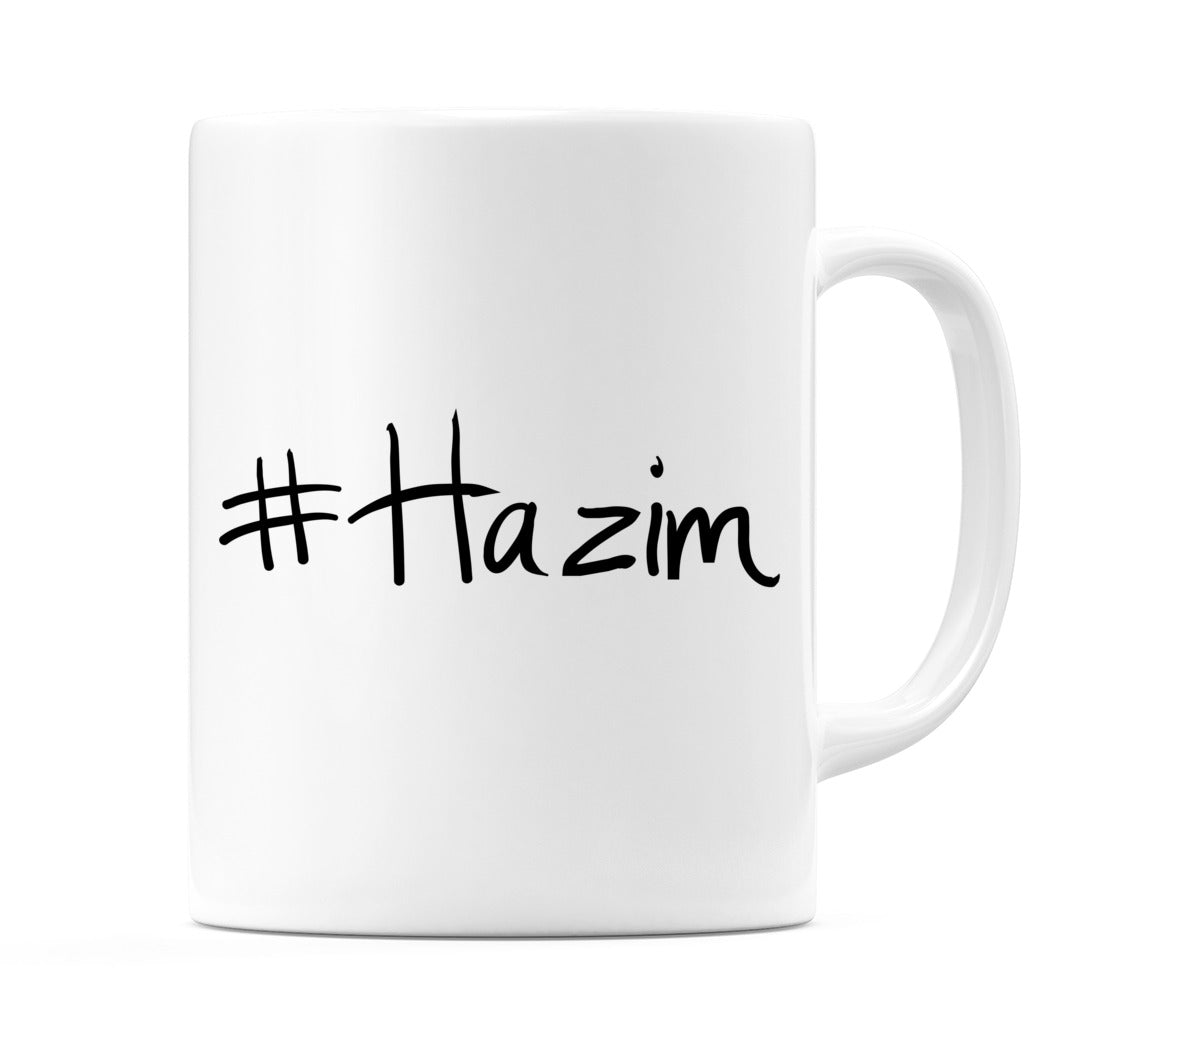 #Hazim Mug